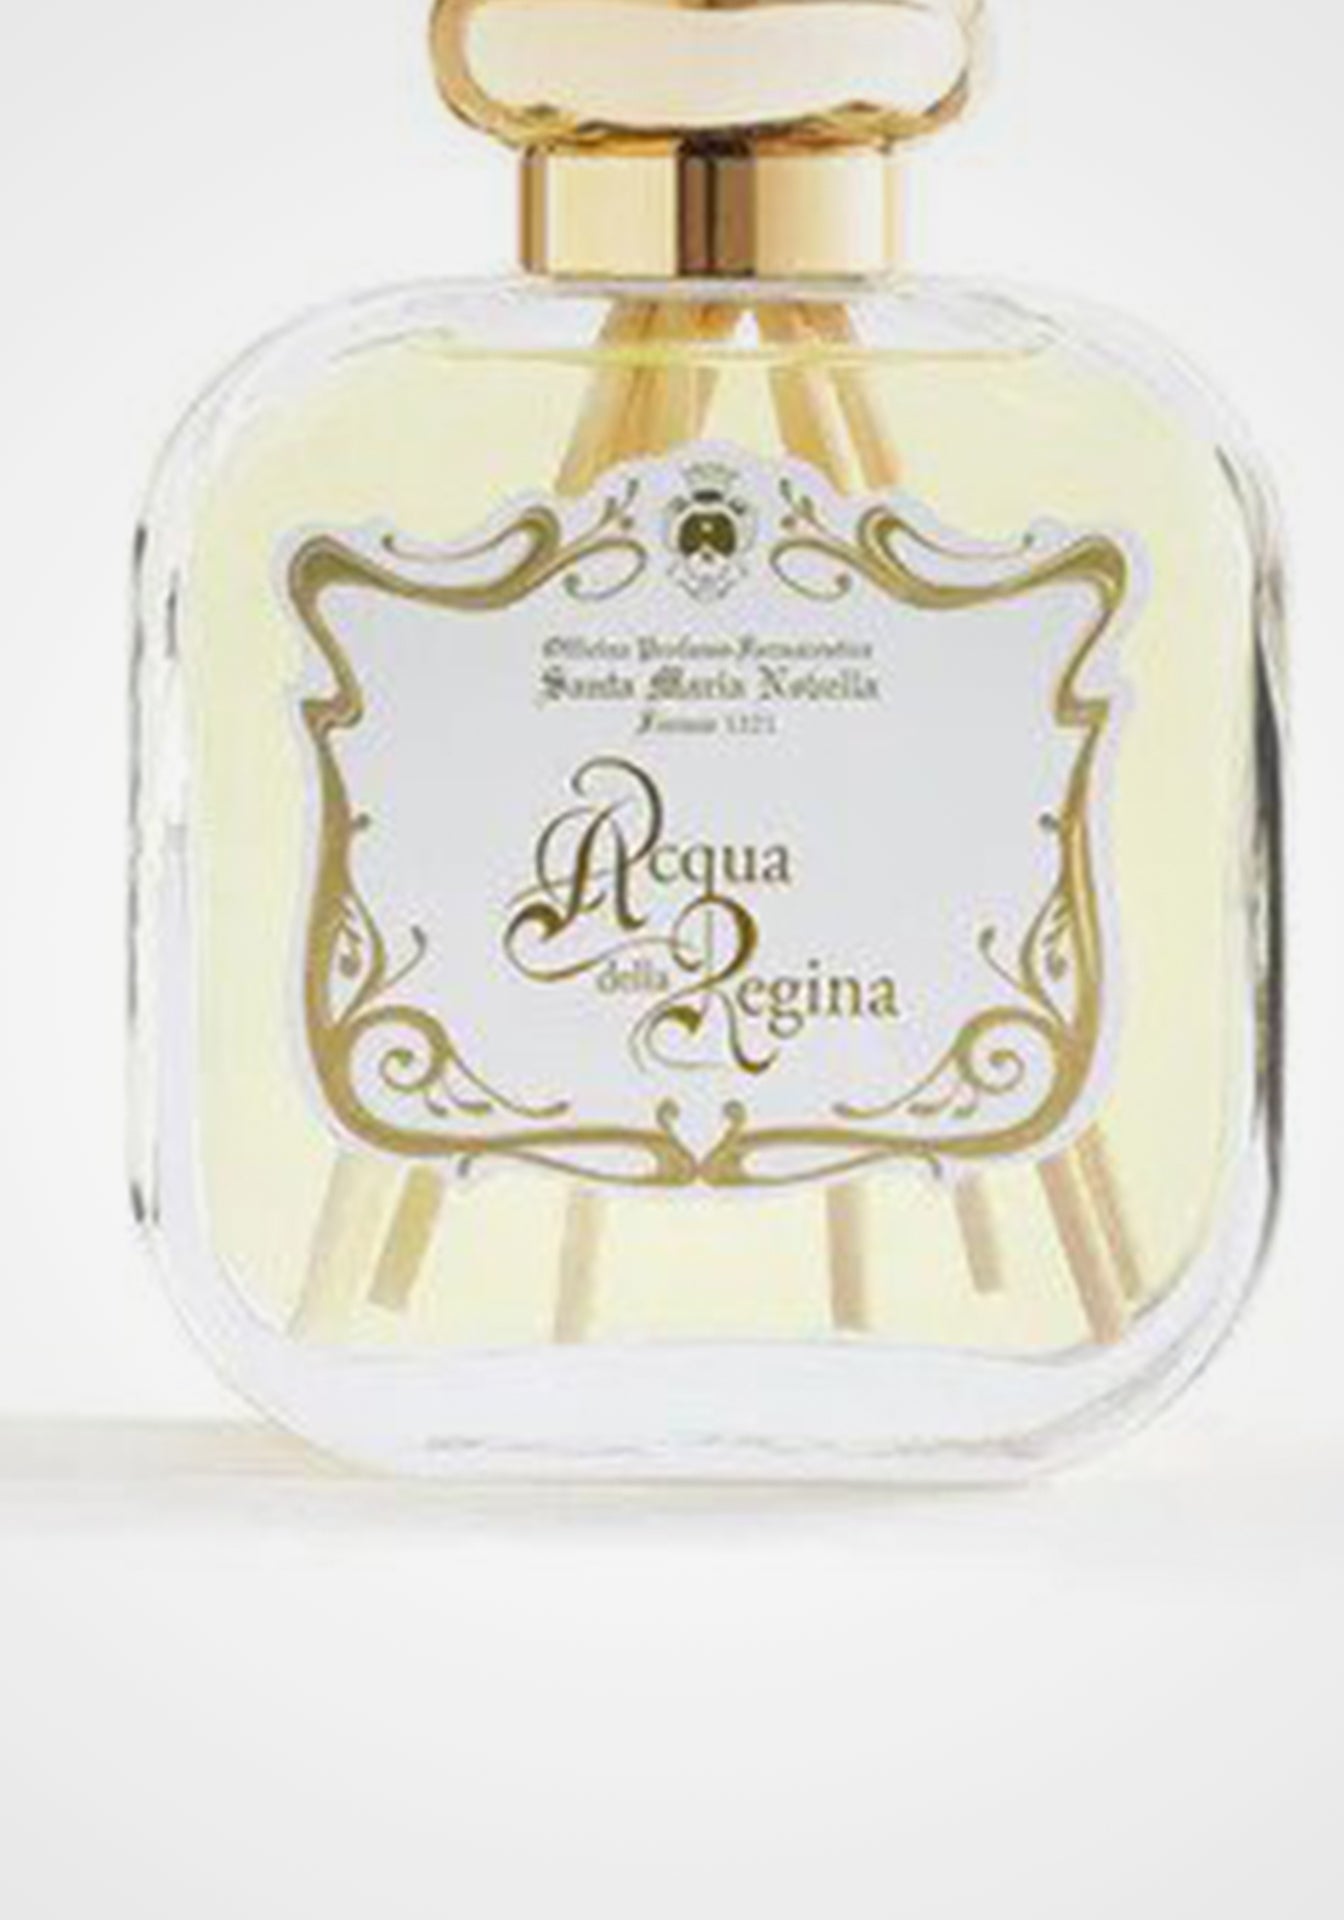 Acqua della Regina Room Fragrance Diffuser